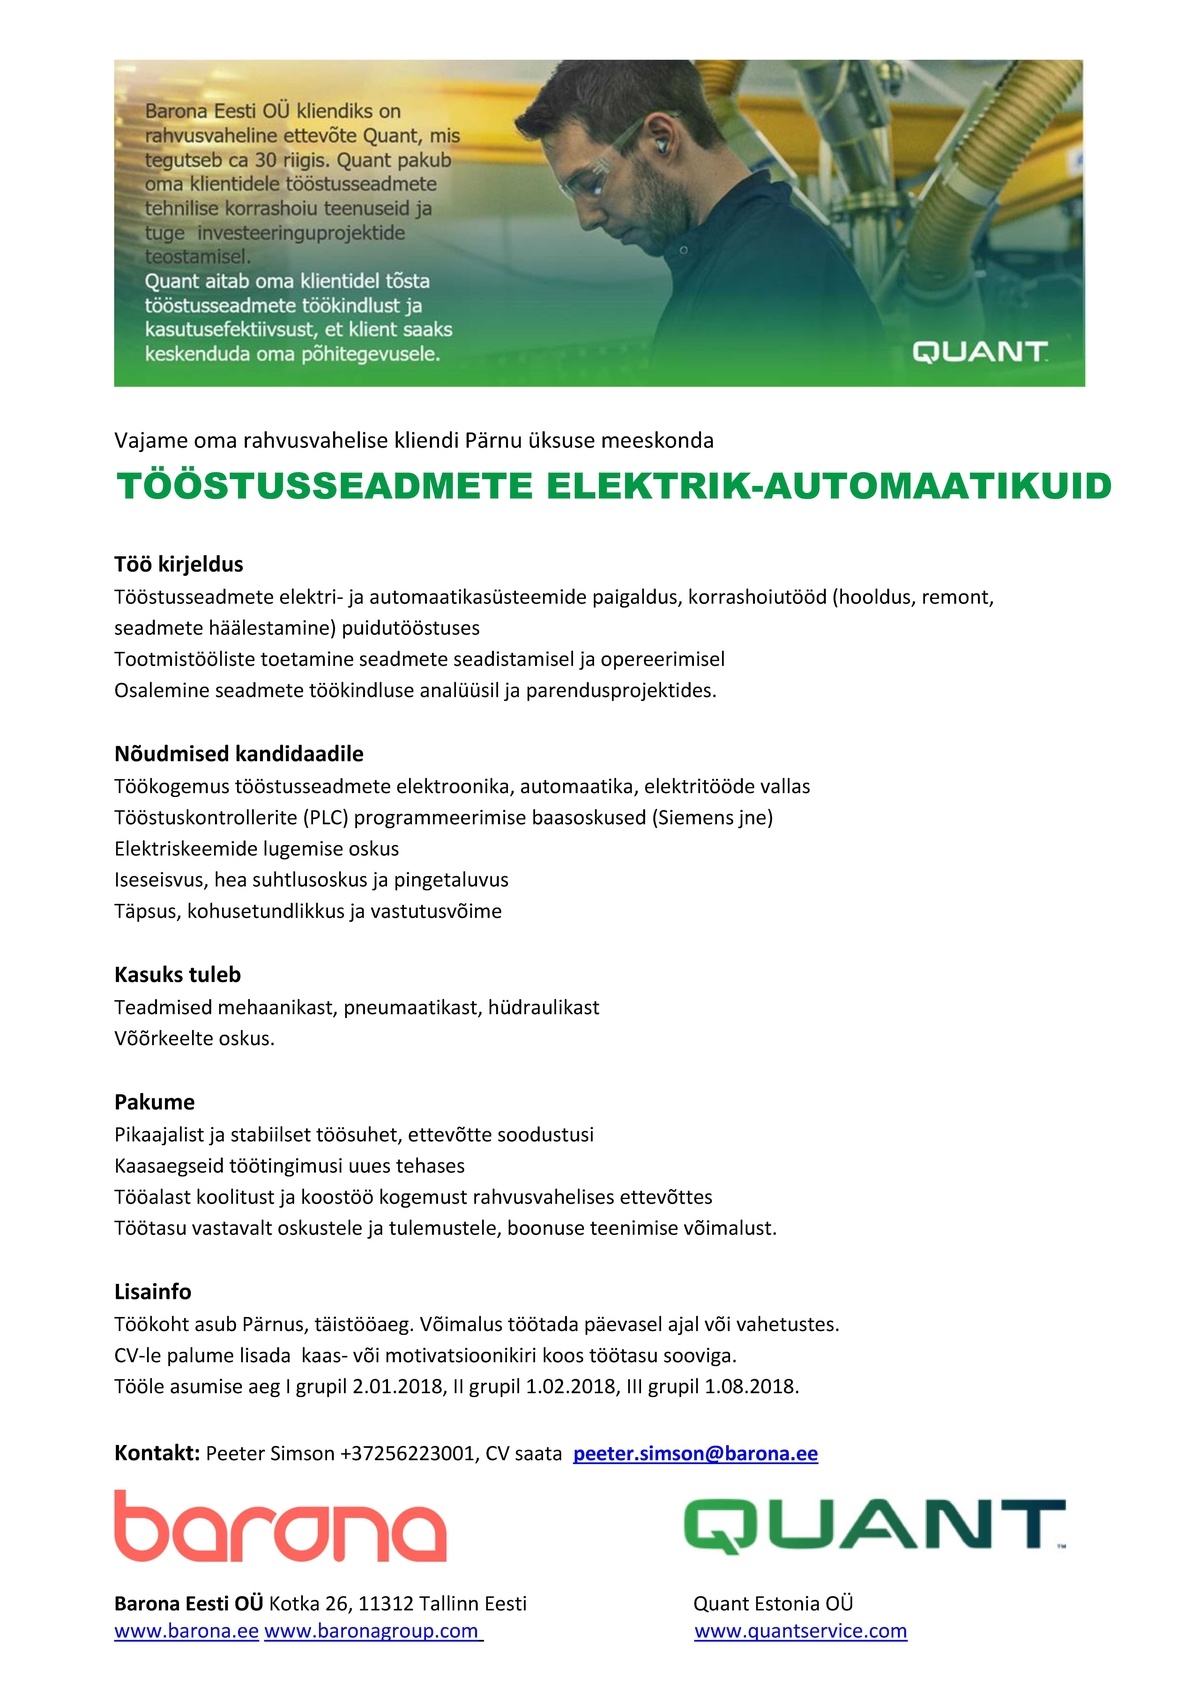 Barona Eesti OÜ Tööstusseadmete elektrik-automaatikuid Pärnusse